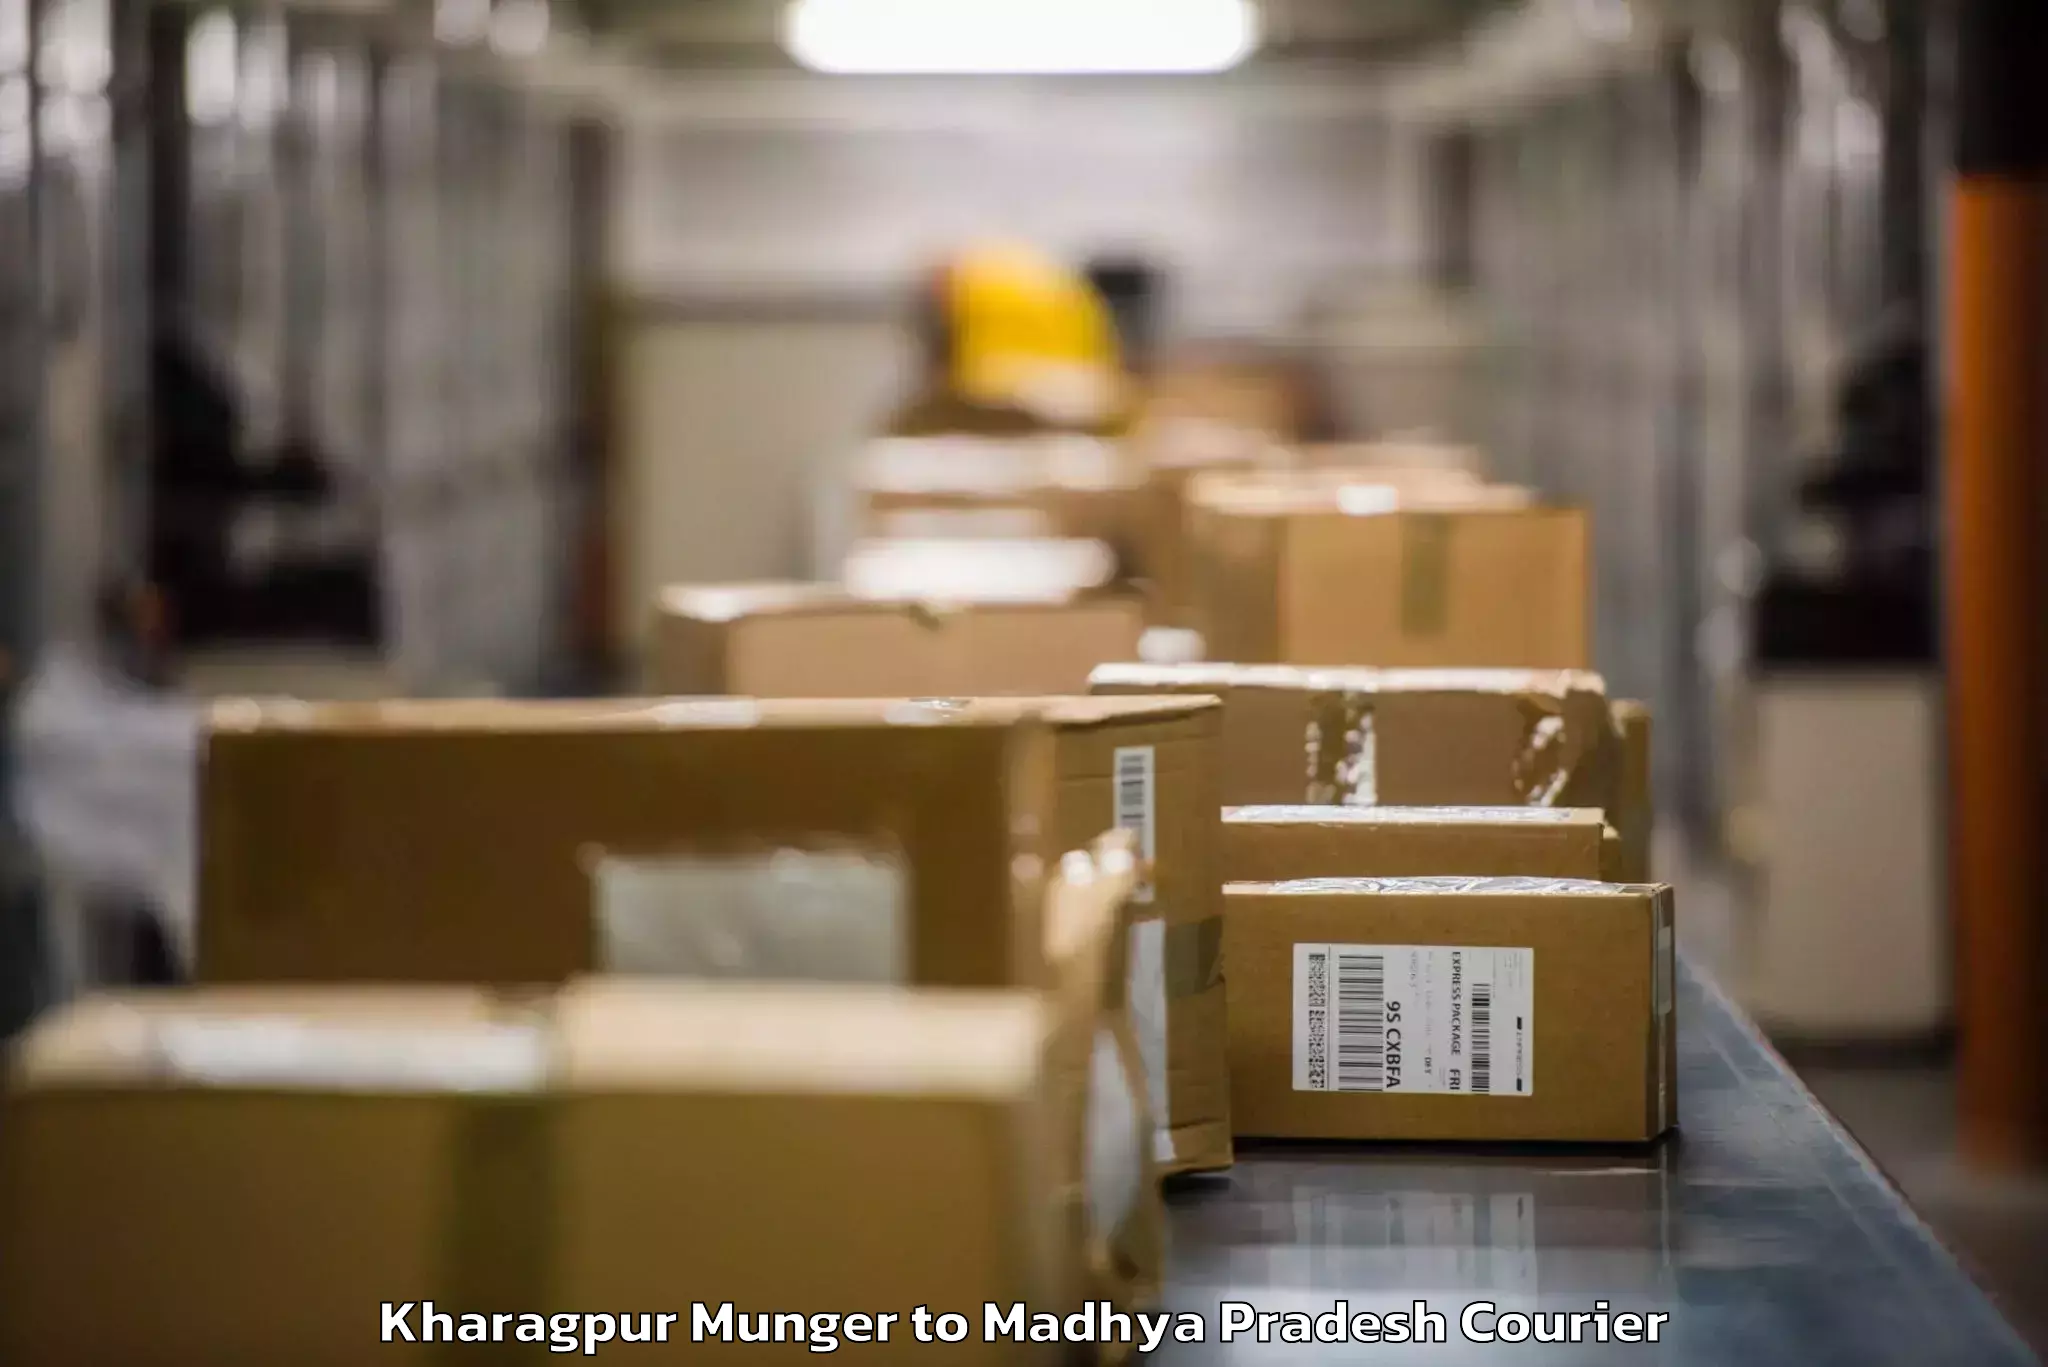 Baggage courier insights Kharagpur Munger to Madhya Pradesh